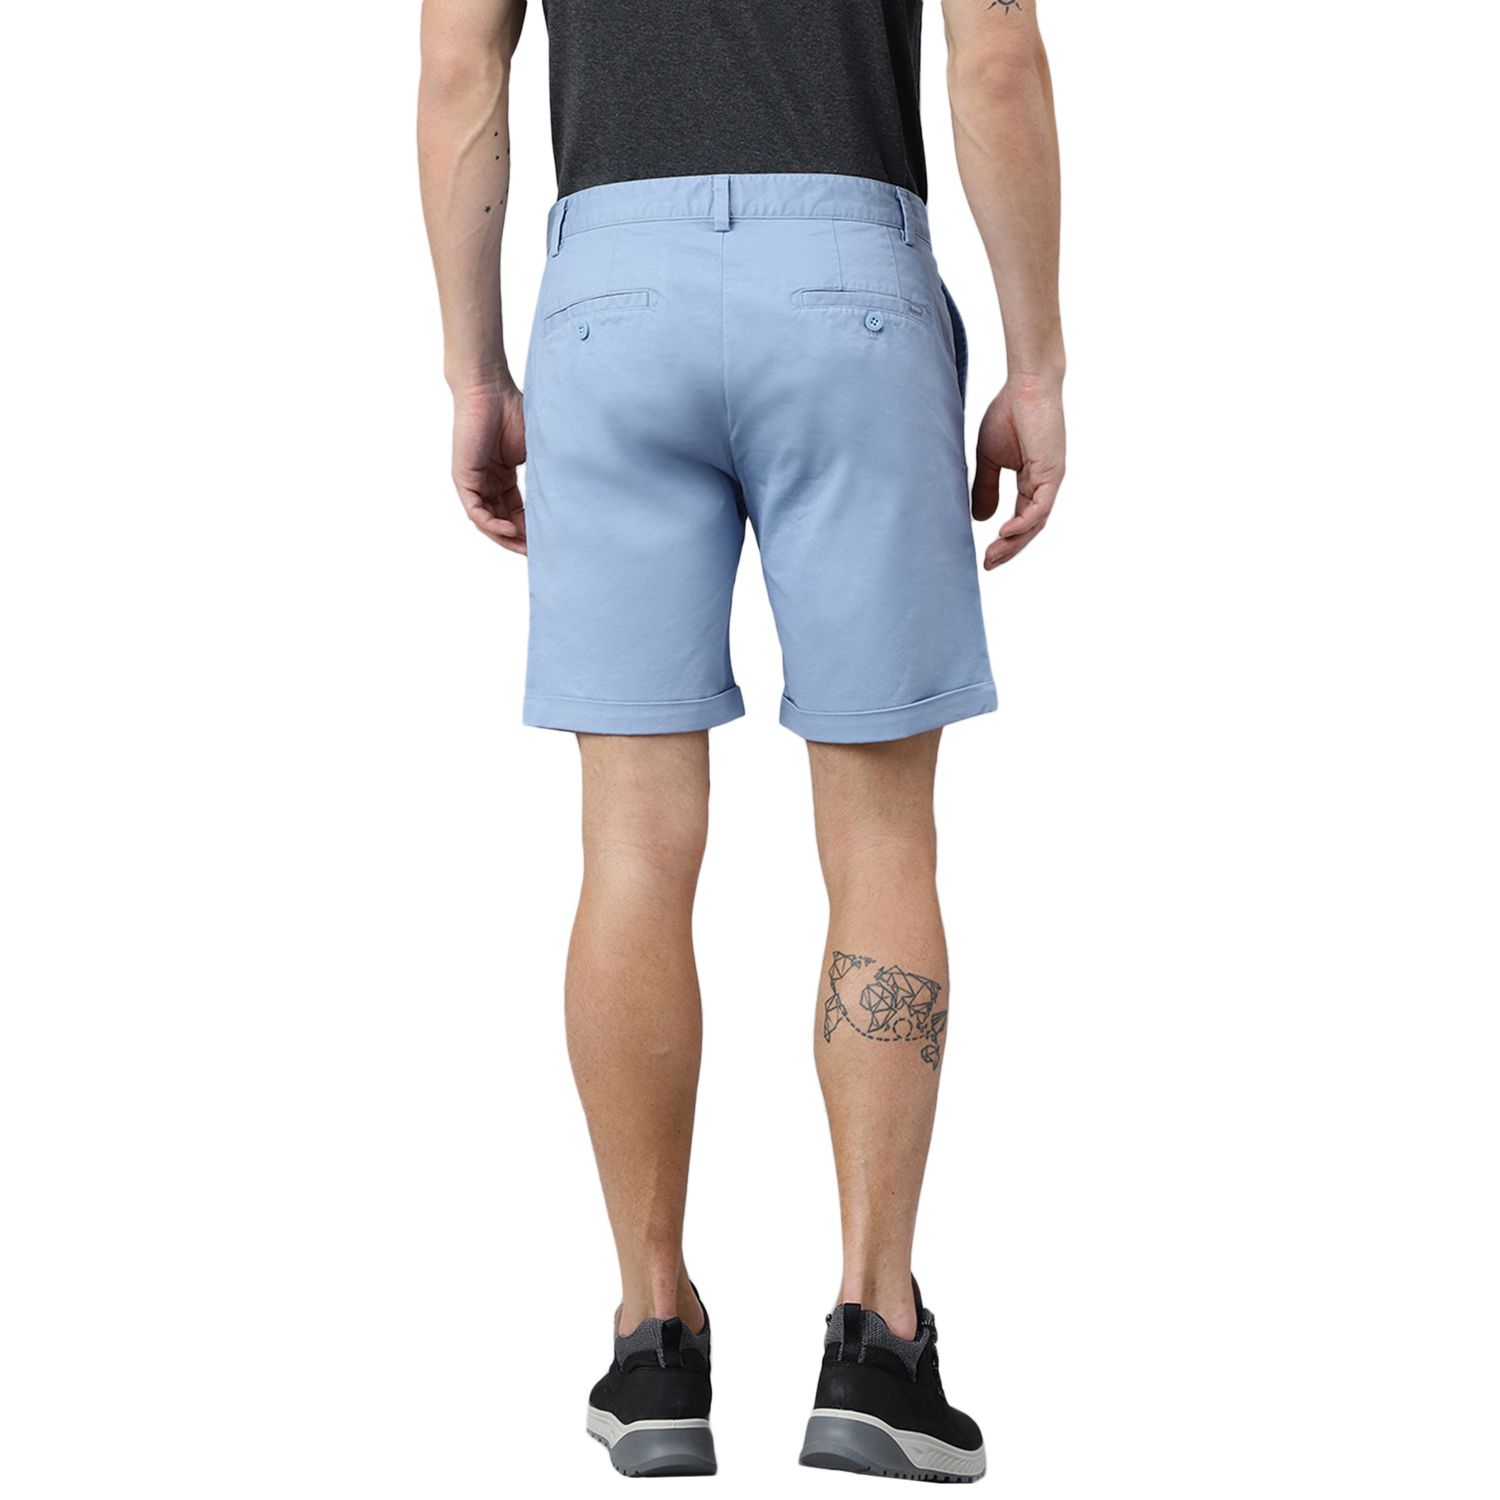 Blue shorts for men